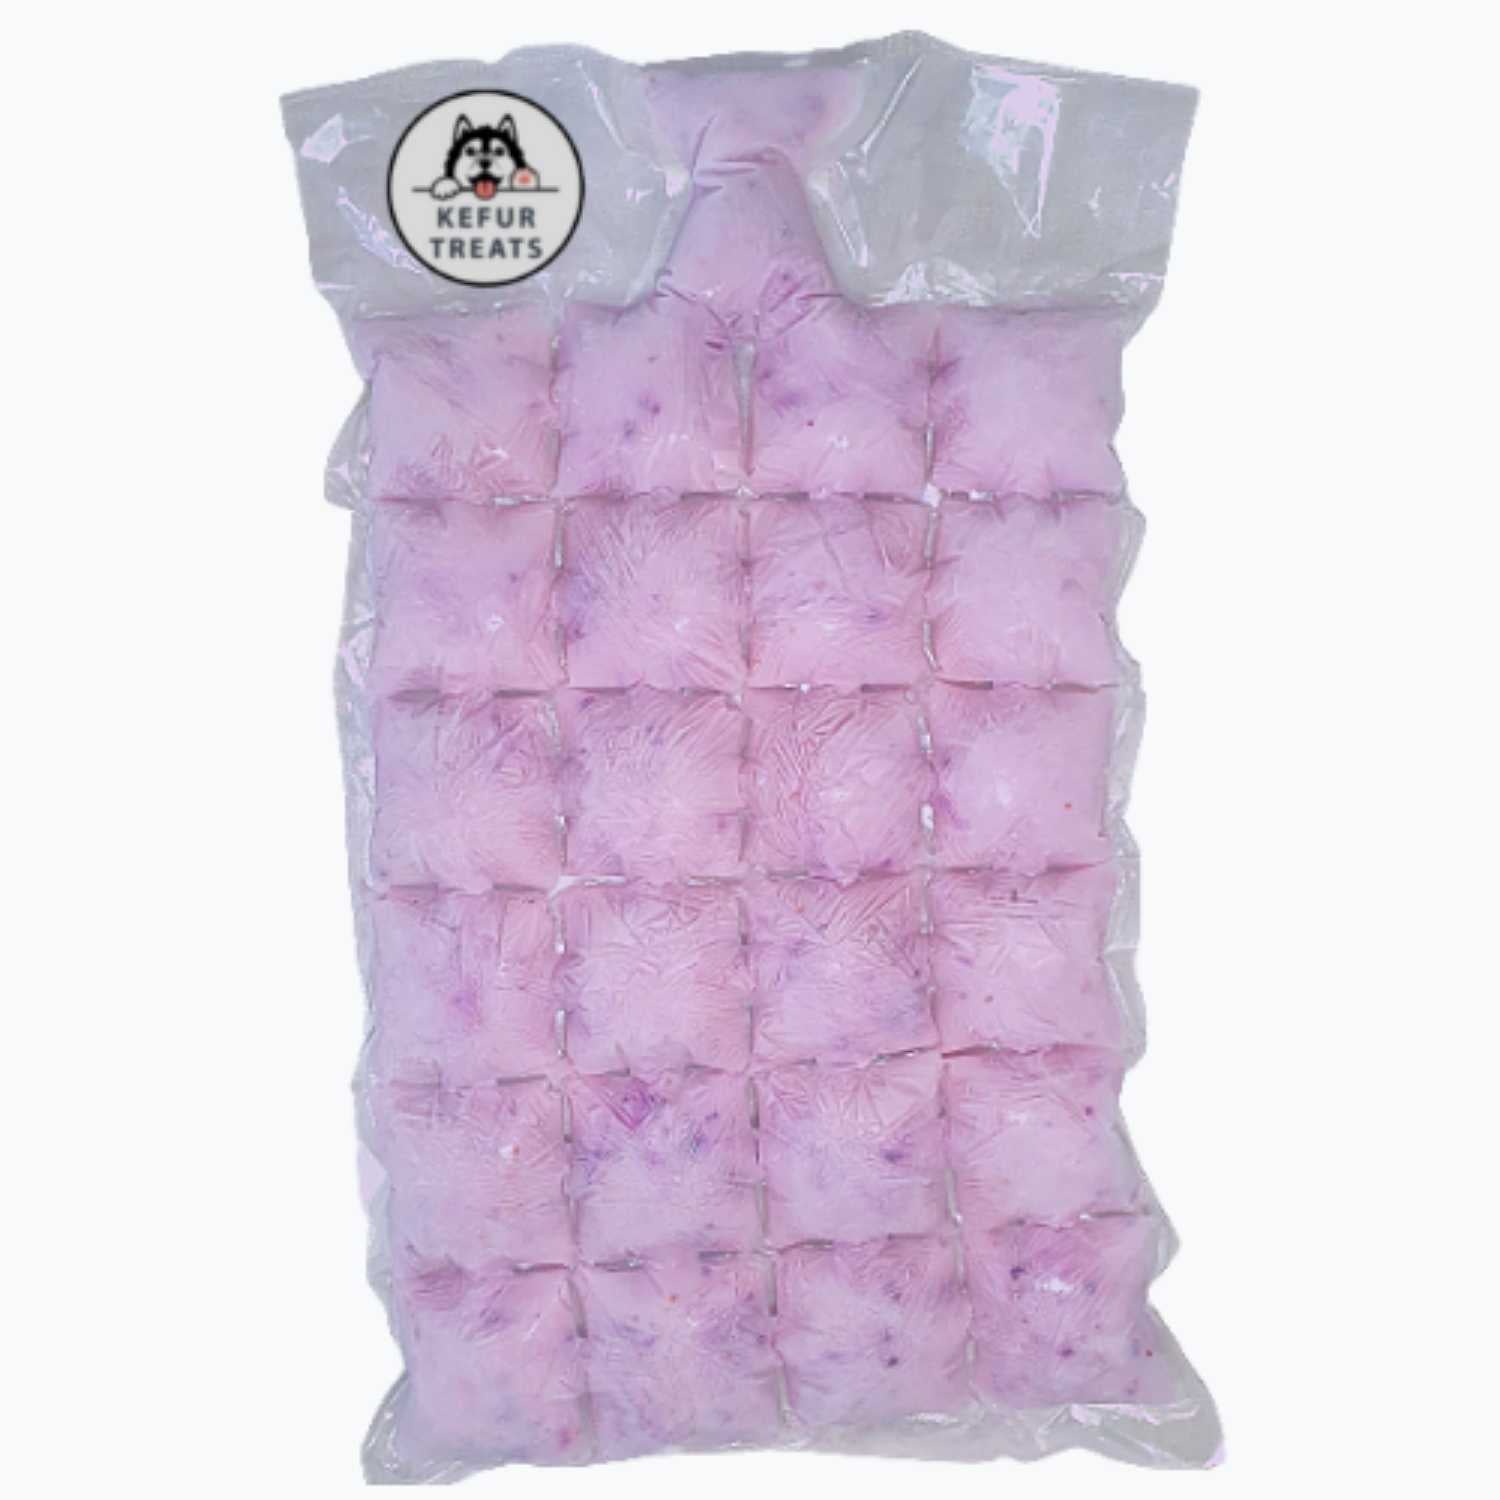 KEFUR TREATS - BLUEBERRY Goat Milk Kefir Frozen Pack (24 Cubes) - Pet Treats